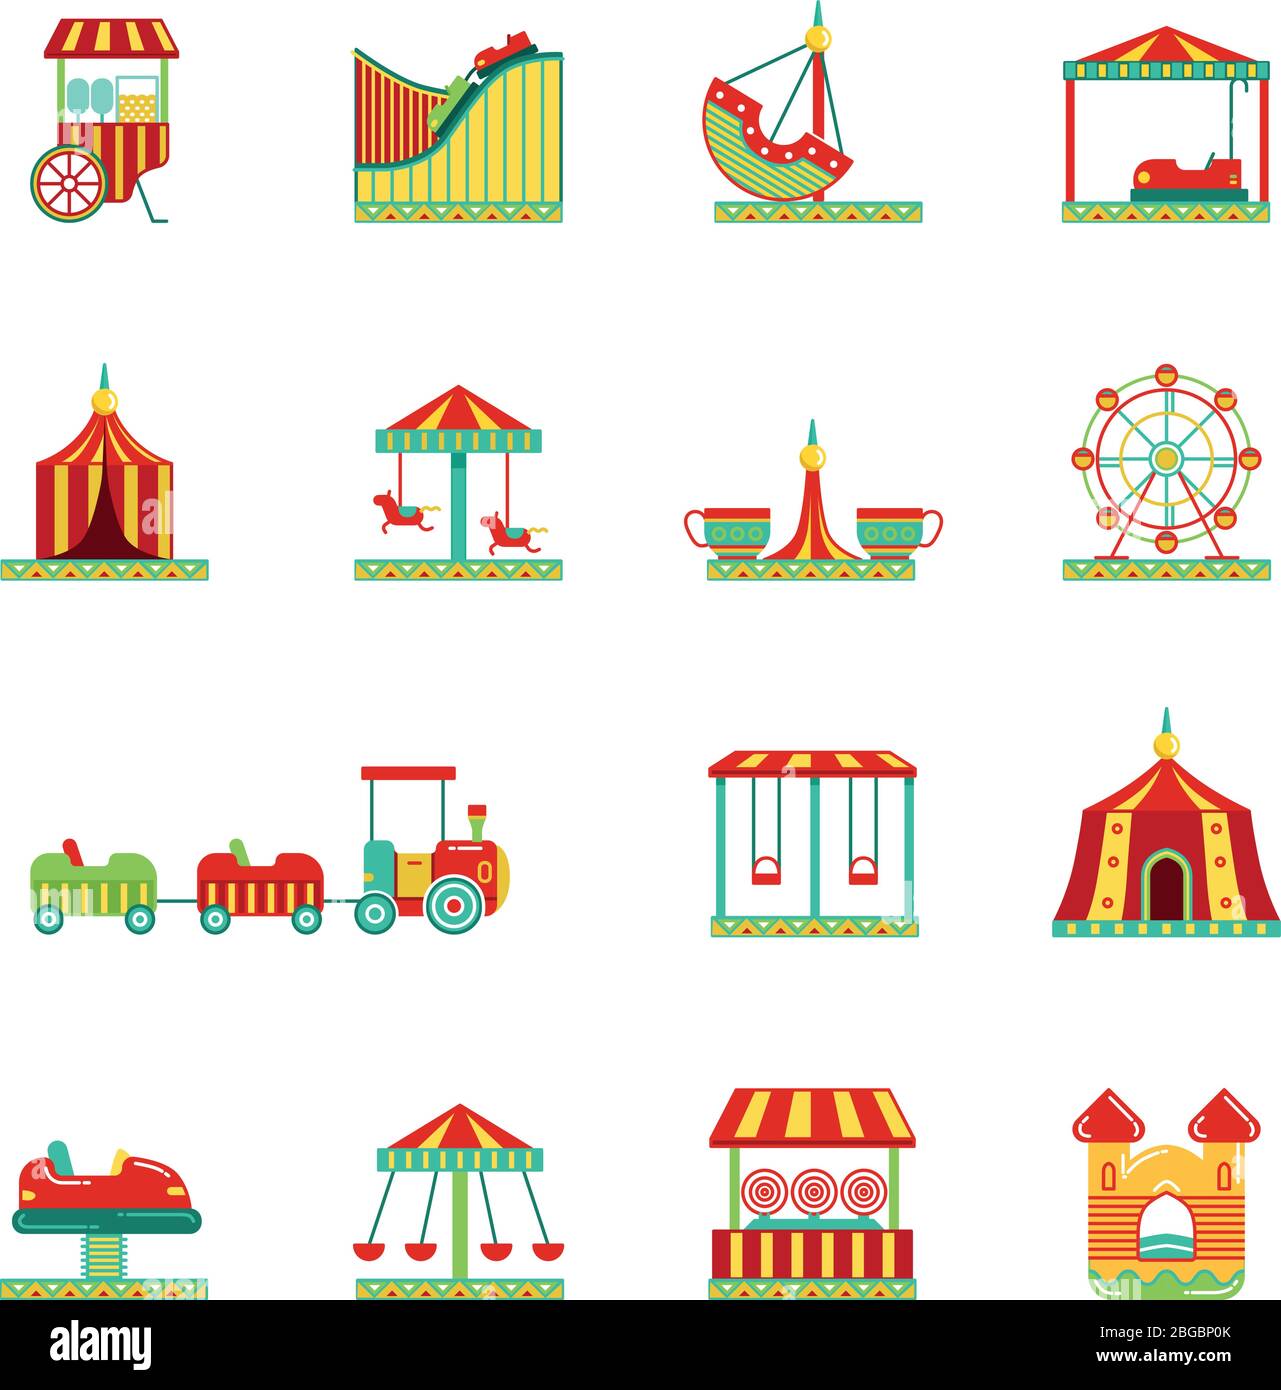 Icon-Set von Attraktionen im Vergnügungspark. Zirkus, Karussell und andere Vektorgrafiken im flachen Stil Stock Vektor